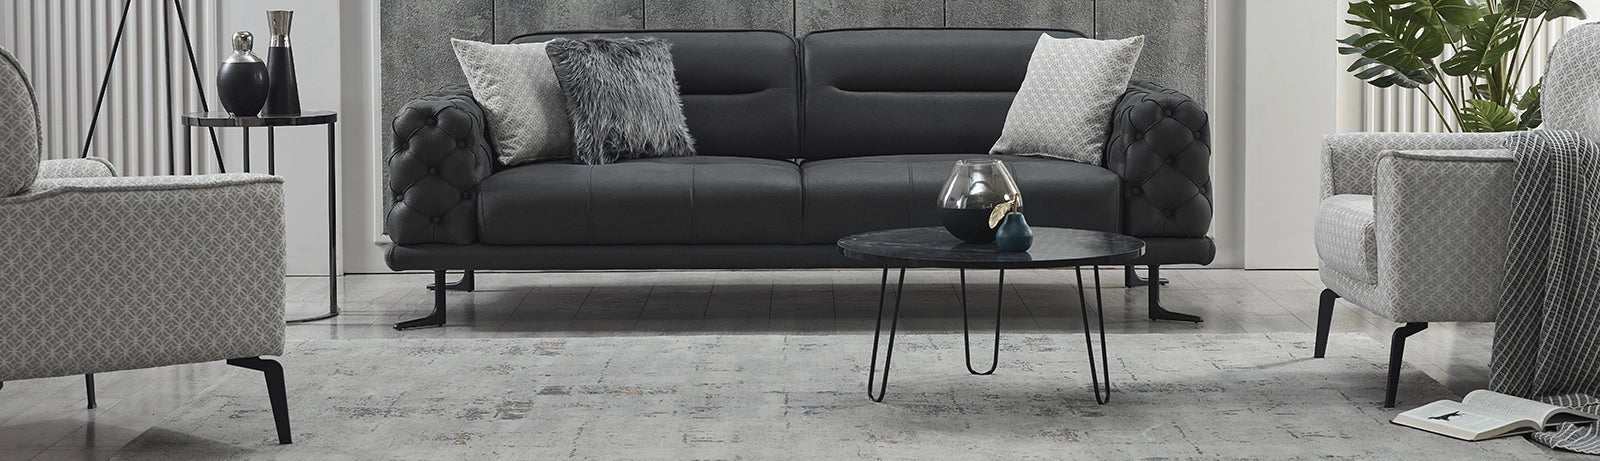 4 Seater Sofa - Berre Furniture